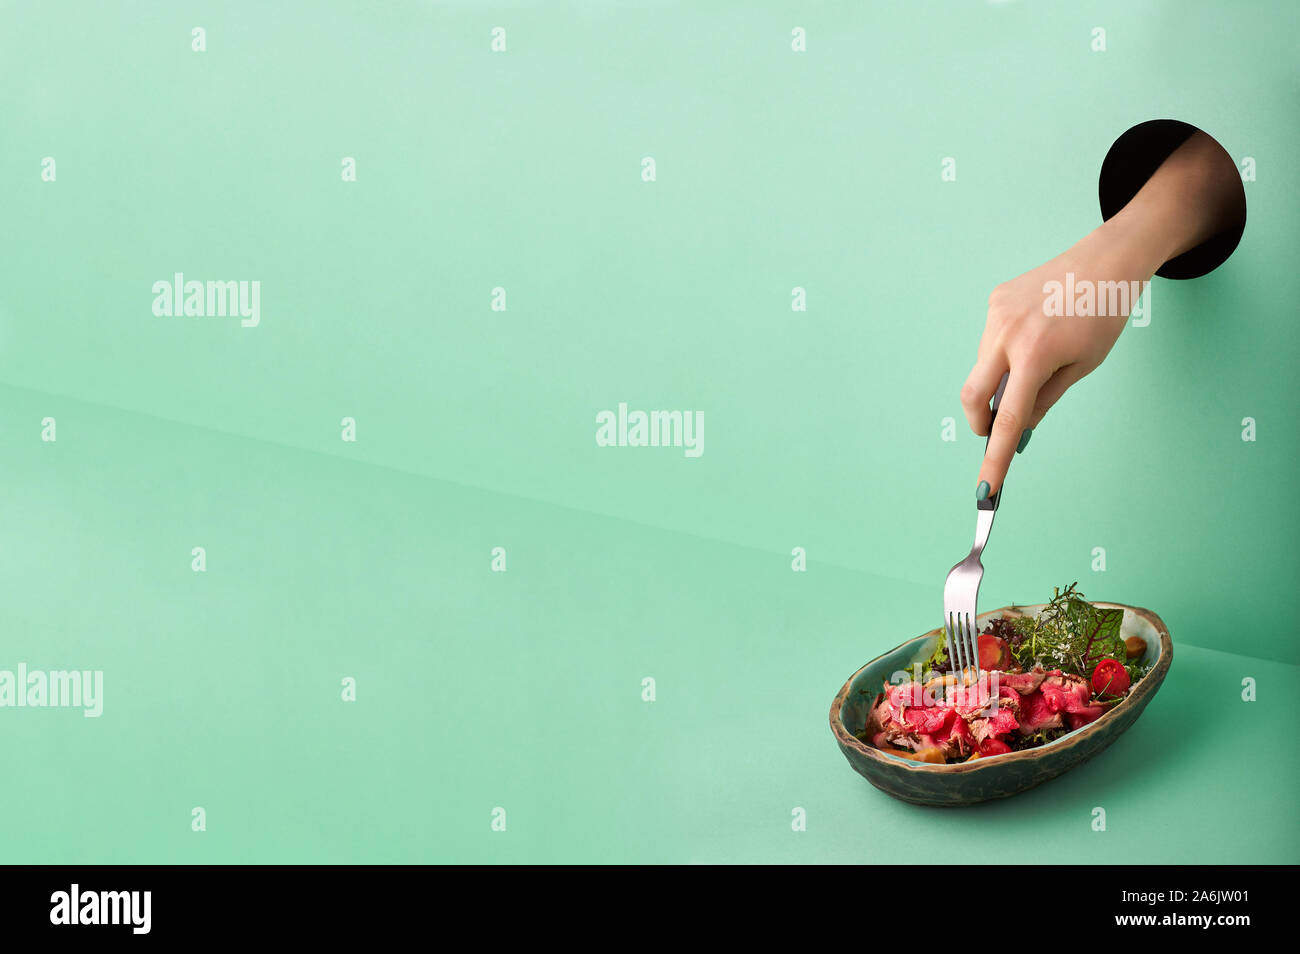 Weibliche Hand reicht für Roastbeef Salat durch das Loch in der grünen Wand. Essen Konzept in der neo-mint Farbe. Hand nimmt Nahrung durch das Loch. Rot Rindfleisch Salat Stockfoto